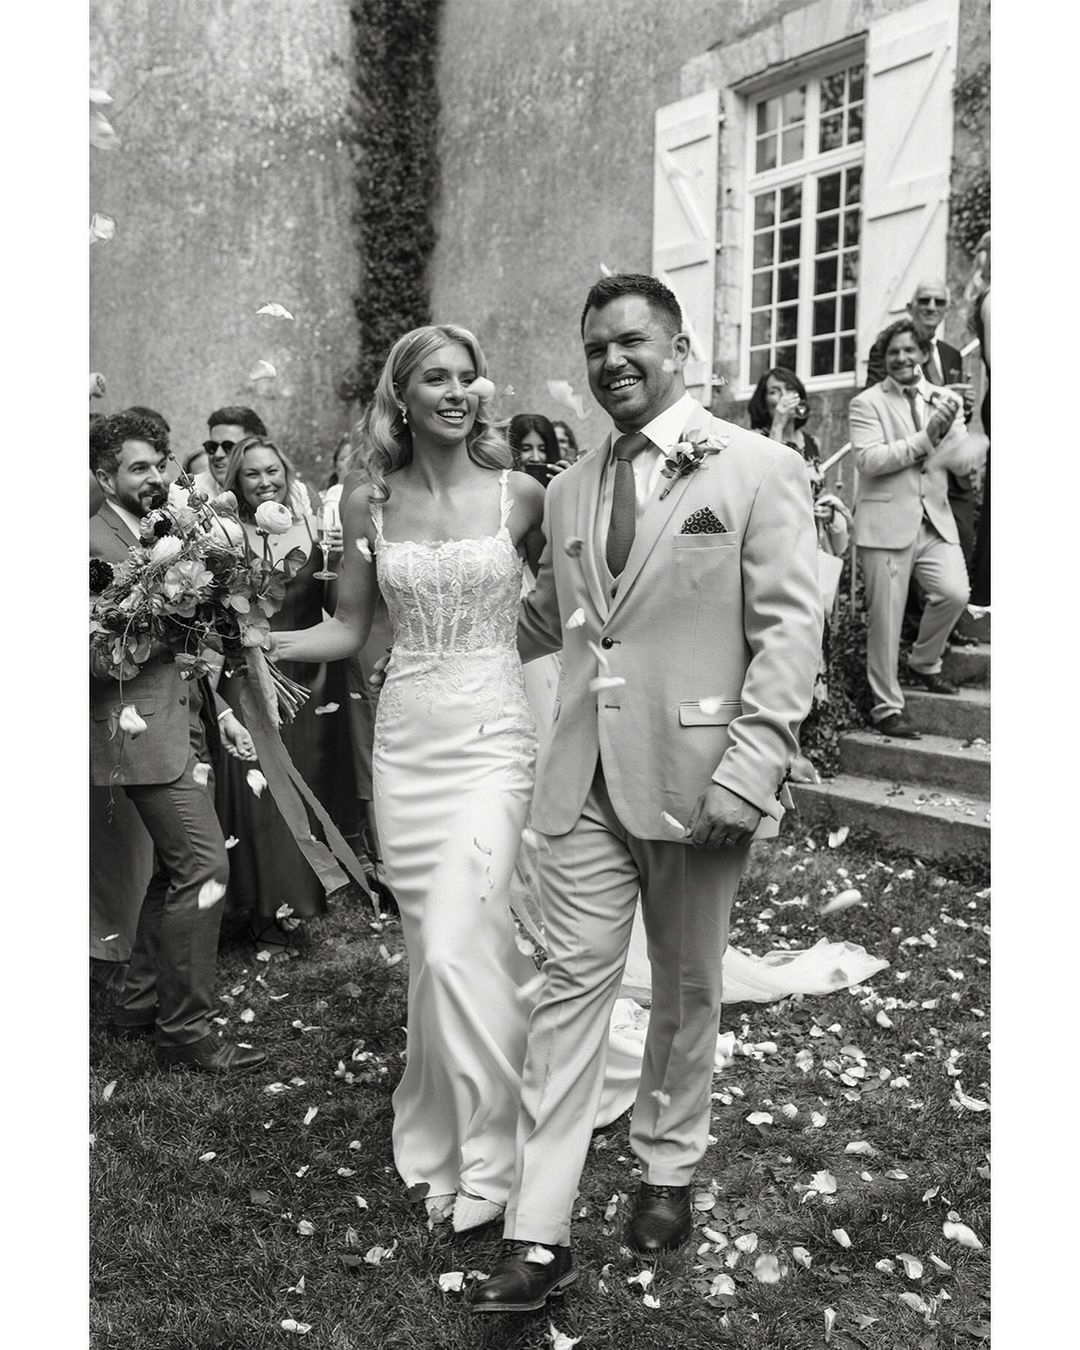 A Fairytale Wedding: Emma and Lewis' Enchanting Wedding at Chateau Lartigolle, France